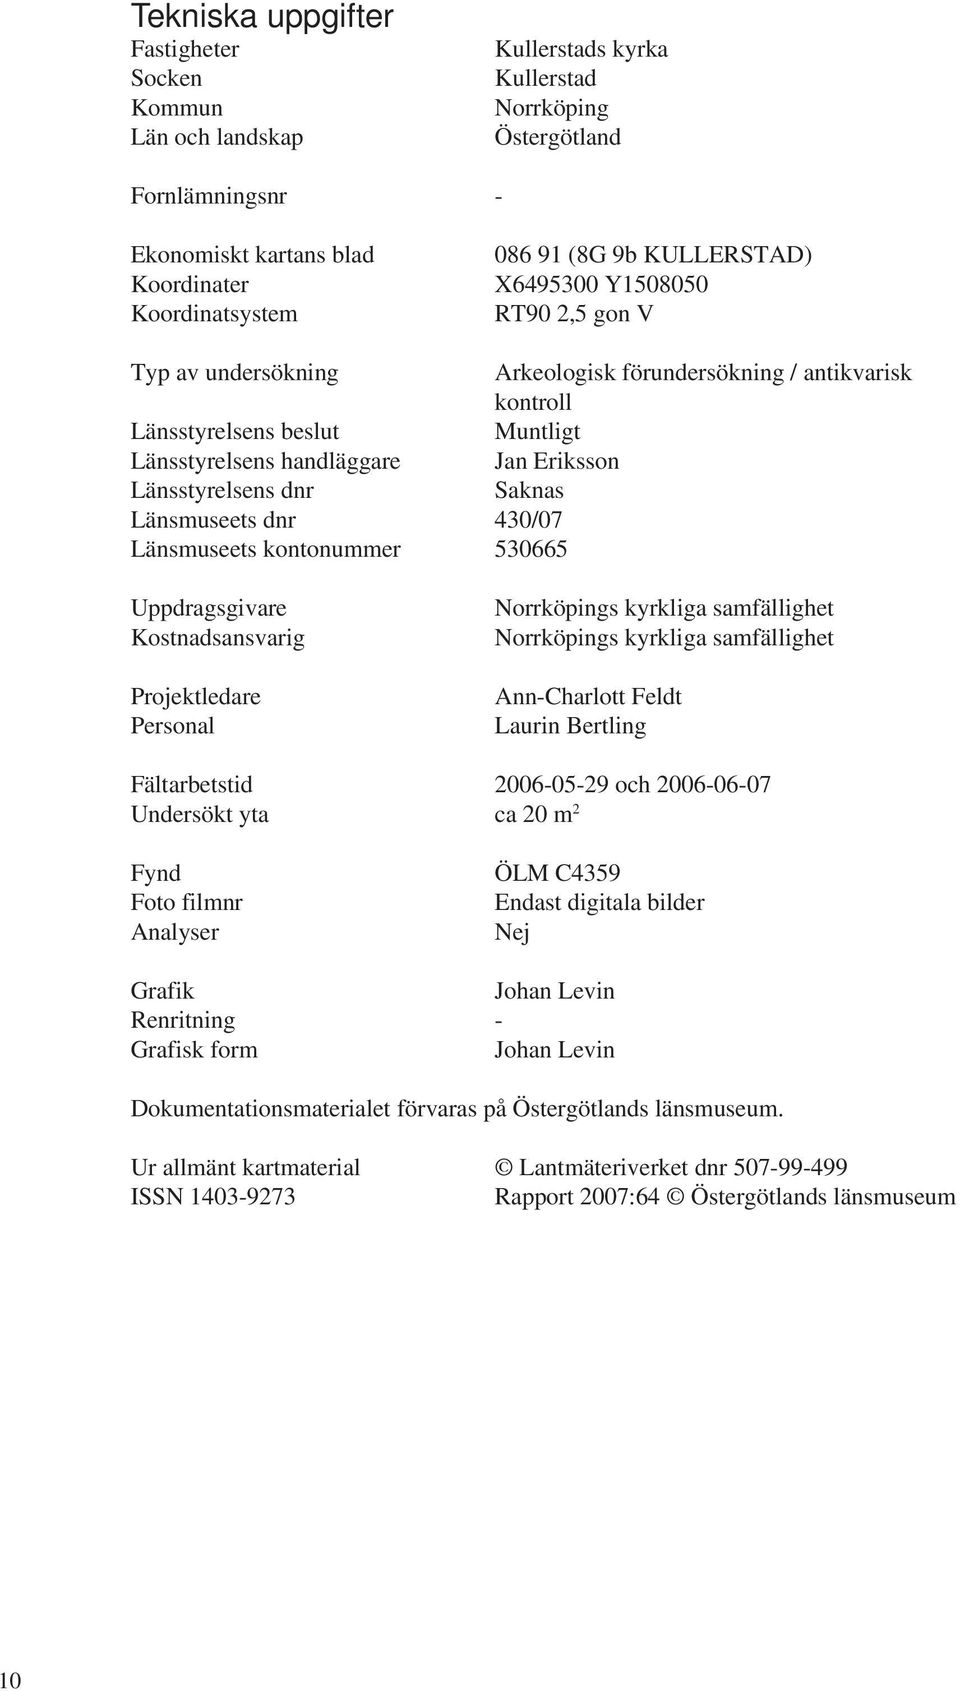 Länsstyrelsens dnr Saknas Länsmuseets dnr 430/07 Länsmuseets kontonummer 530665 Uppdragsgivare Kostnadsansvarig Projektledare Personal Norrköpings kyrkliga samfällighet Norrköpings kyrkliga